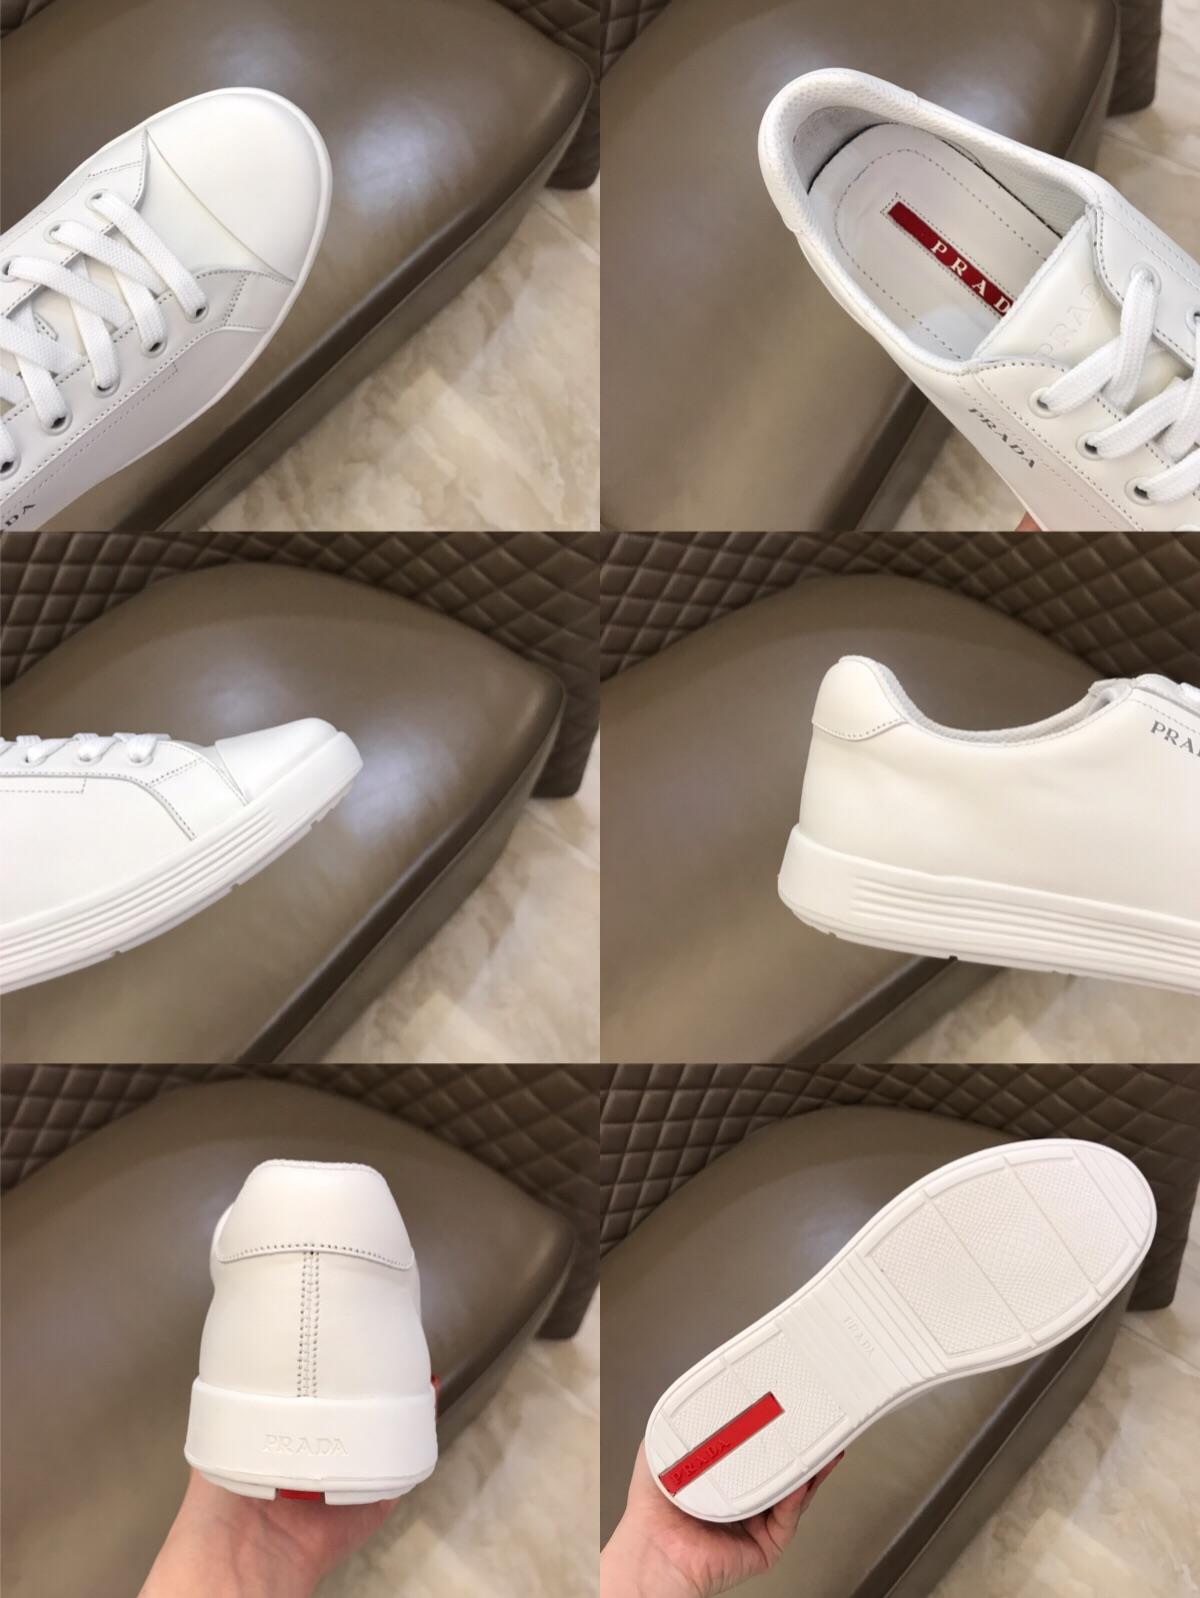 Prada Fashion Sneakers White and white soles MS02937